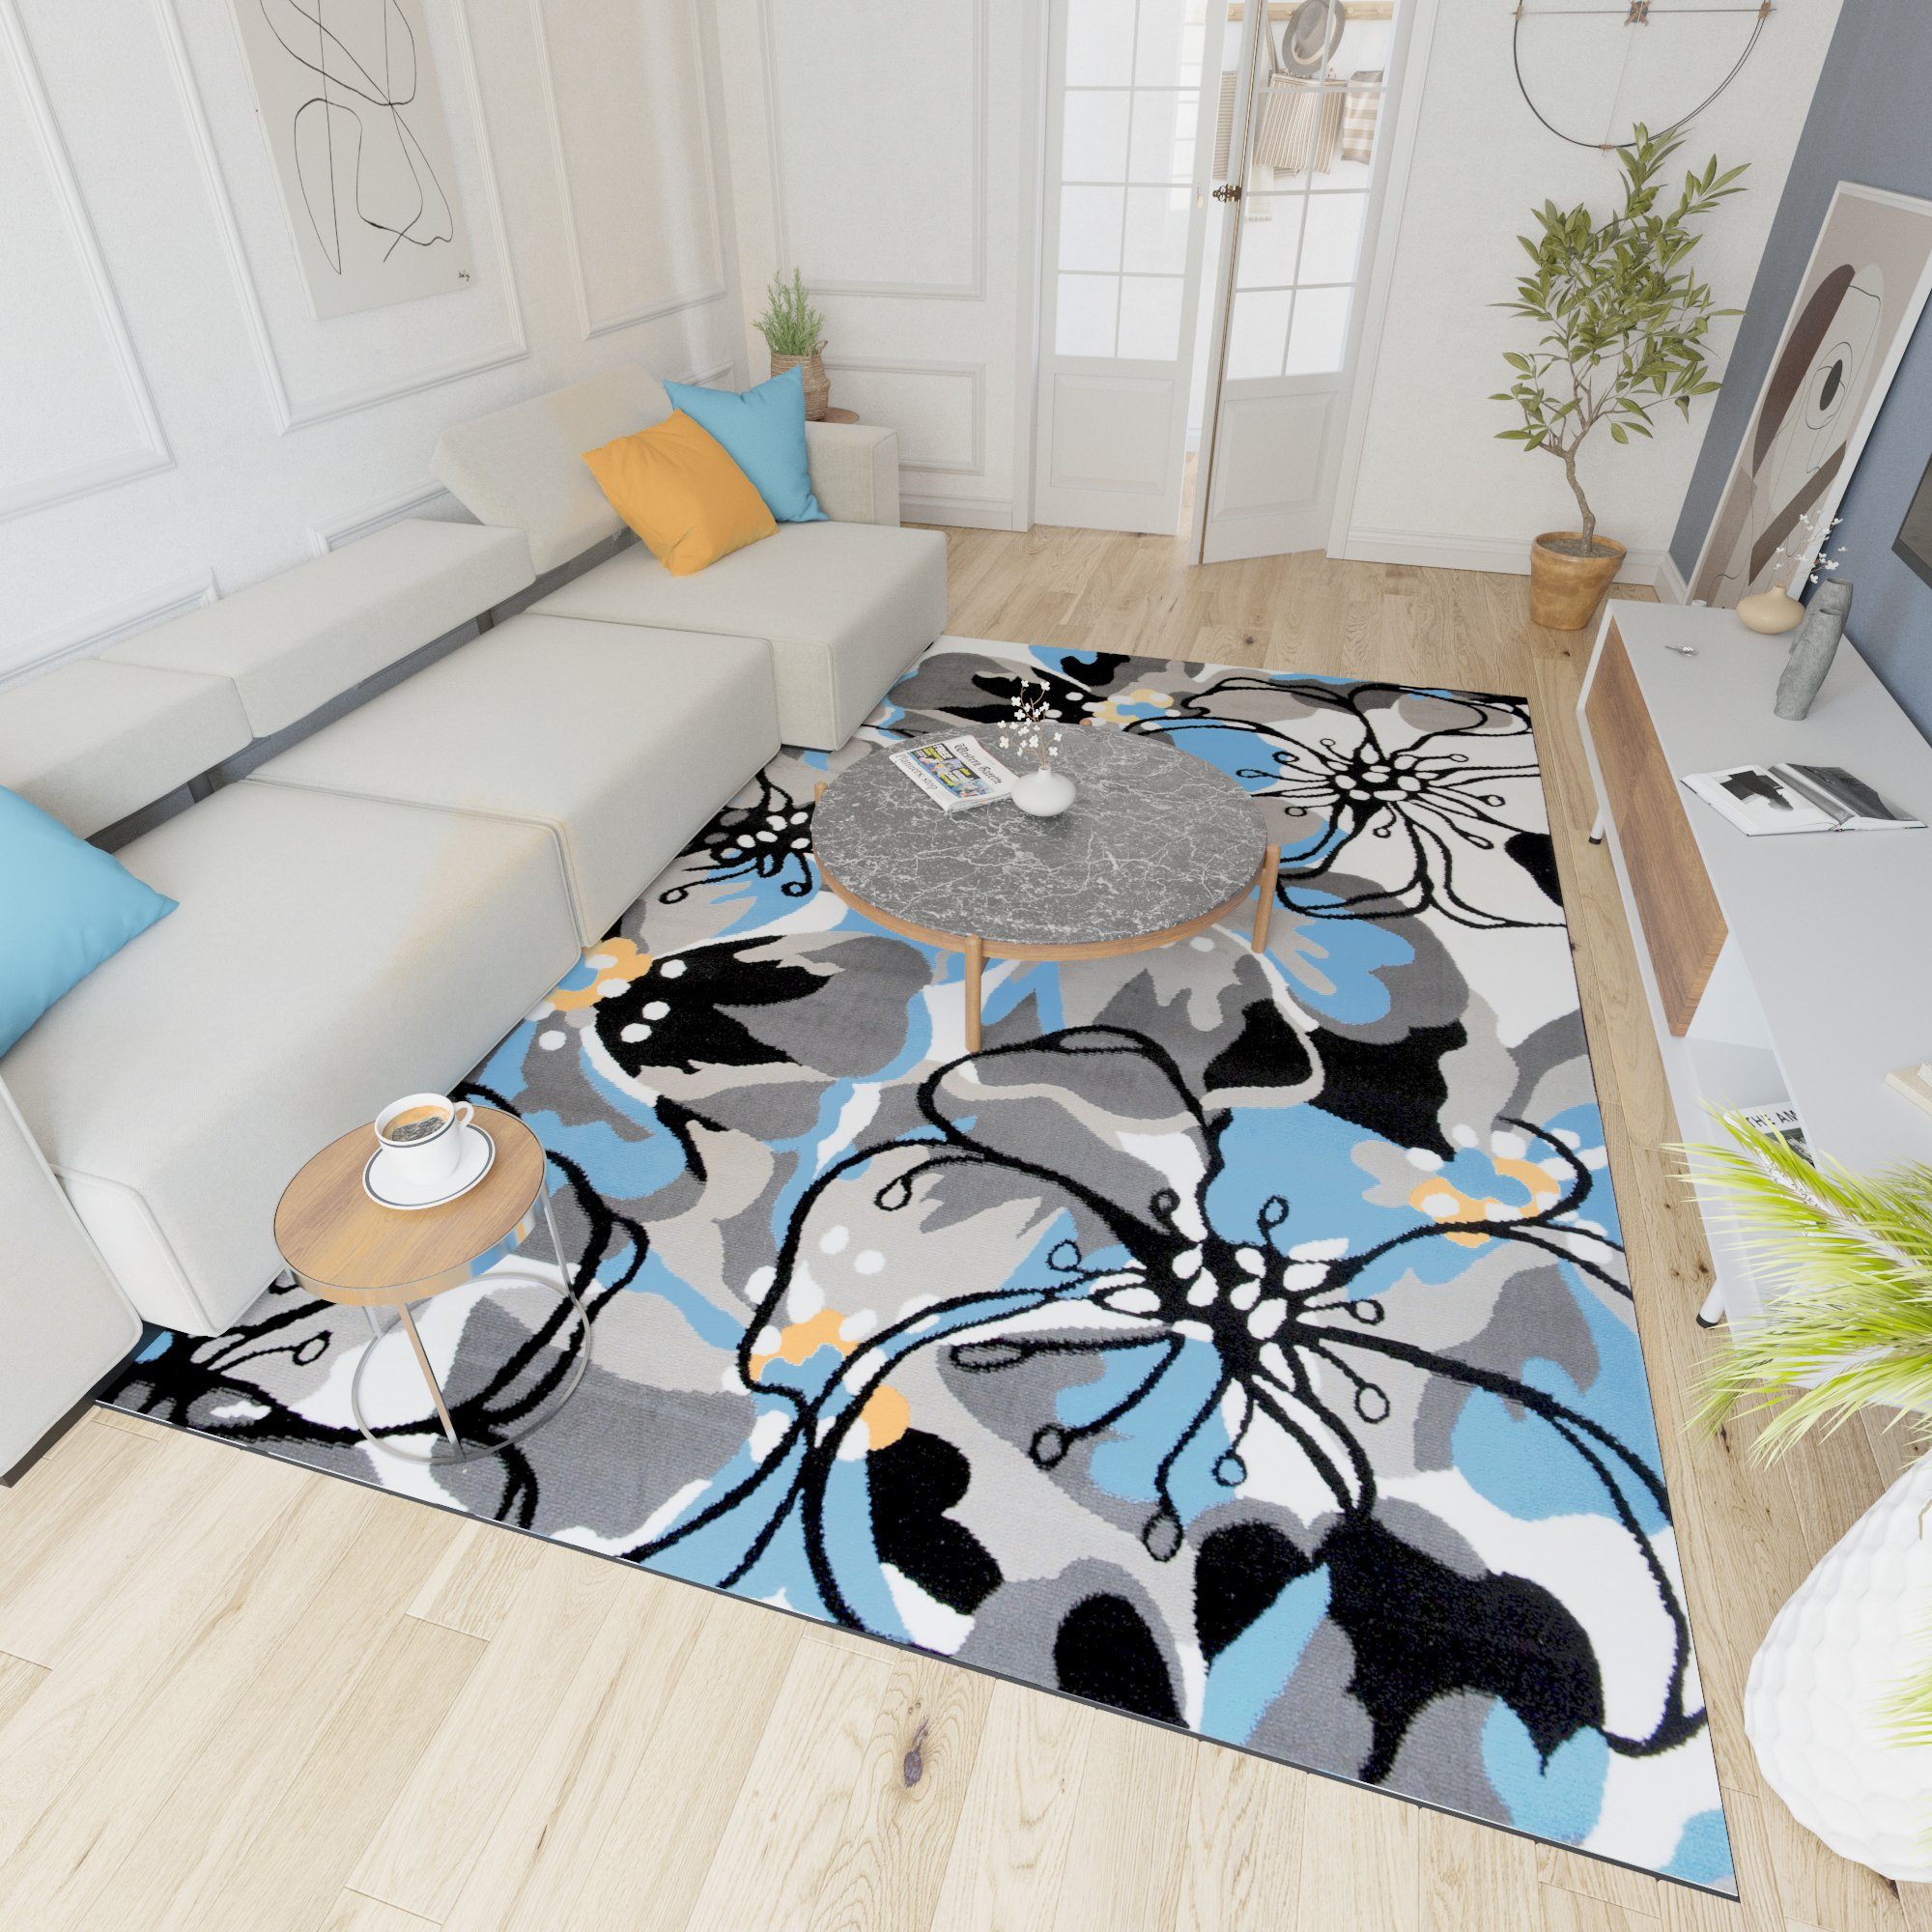 Designteppich Modern Teppich Kurzflor Wohnzimmerteppich Robust und pflegeleicht GRAU, Mazovia, 200 x 300 cm, Fußbodenheizung, Allergiker geeignet, Farbecht, Pflegeleicht